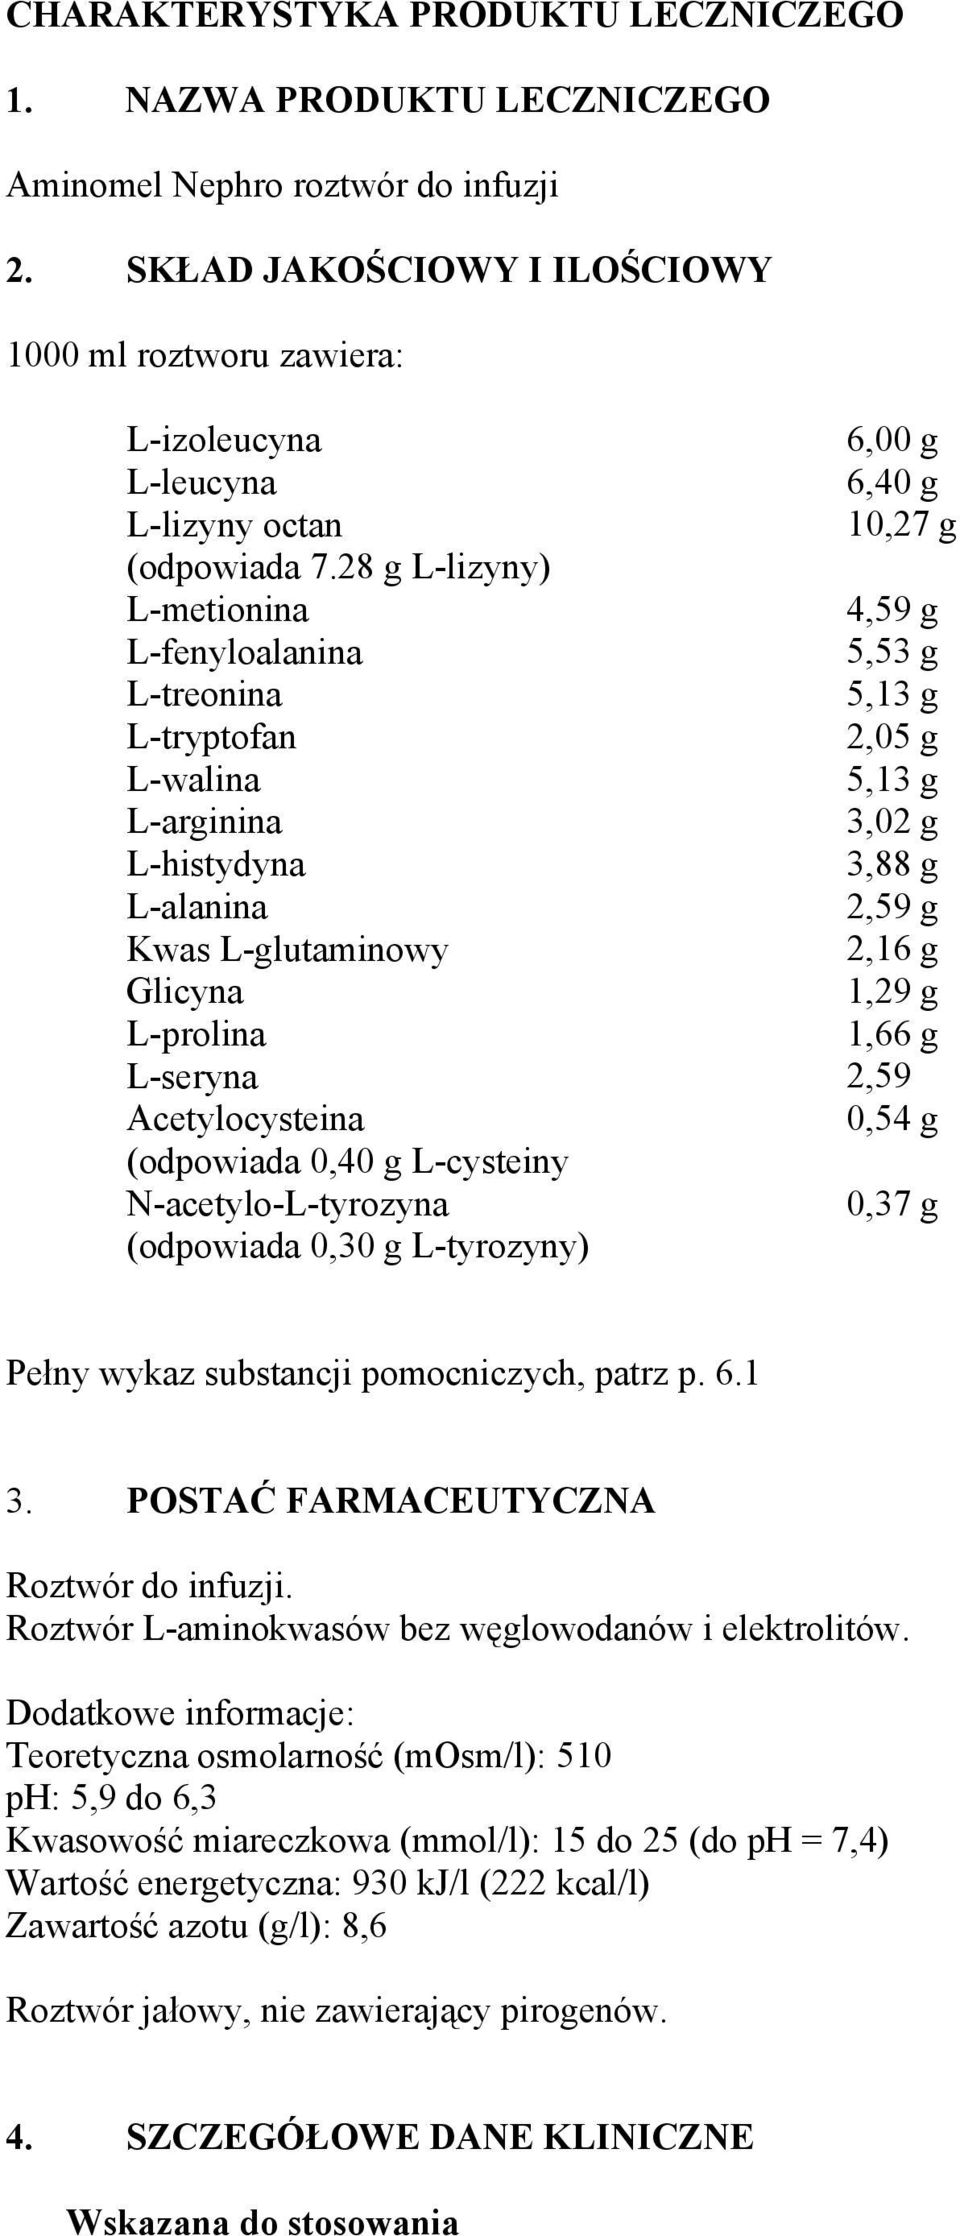 28 g L-lizyny) L-metionina L-fenyloalanina L-treonina L-tryptofan L-walina L-arginina L-histydyna L-alanina Kwas L-glutaminowy Glicyna L-prolina L-seryna Acetylocysteina (odpowiada 0,40 g L-cysteiny